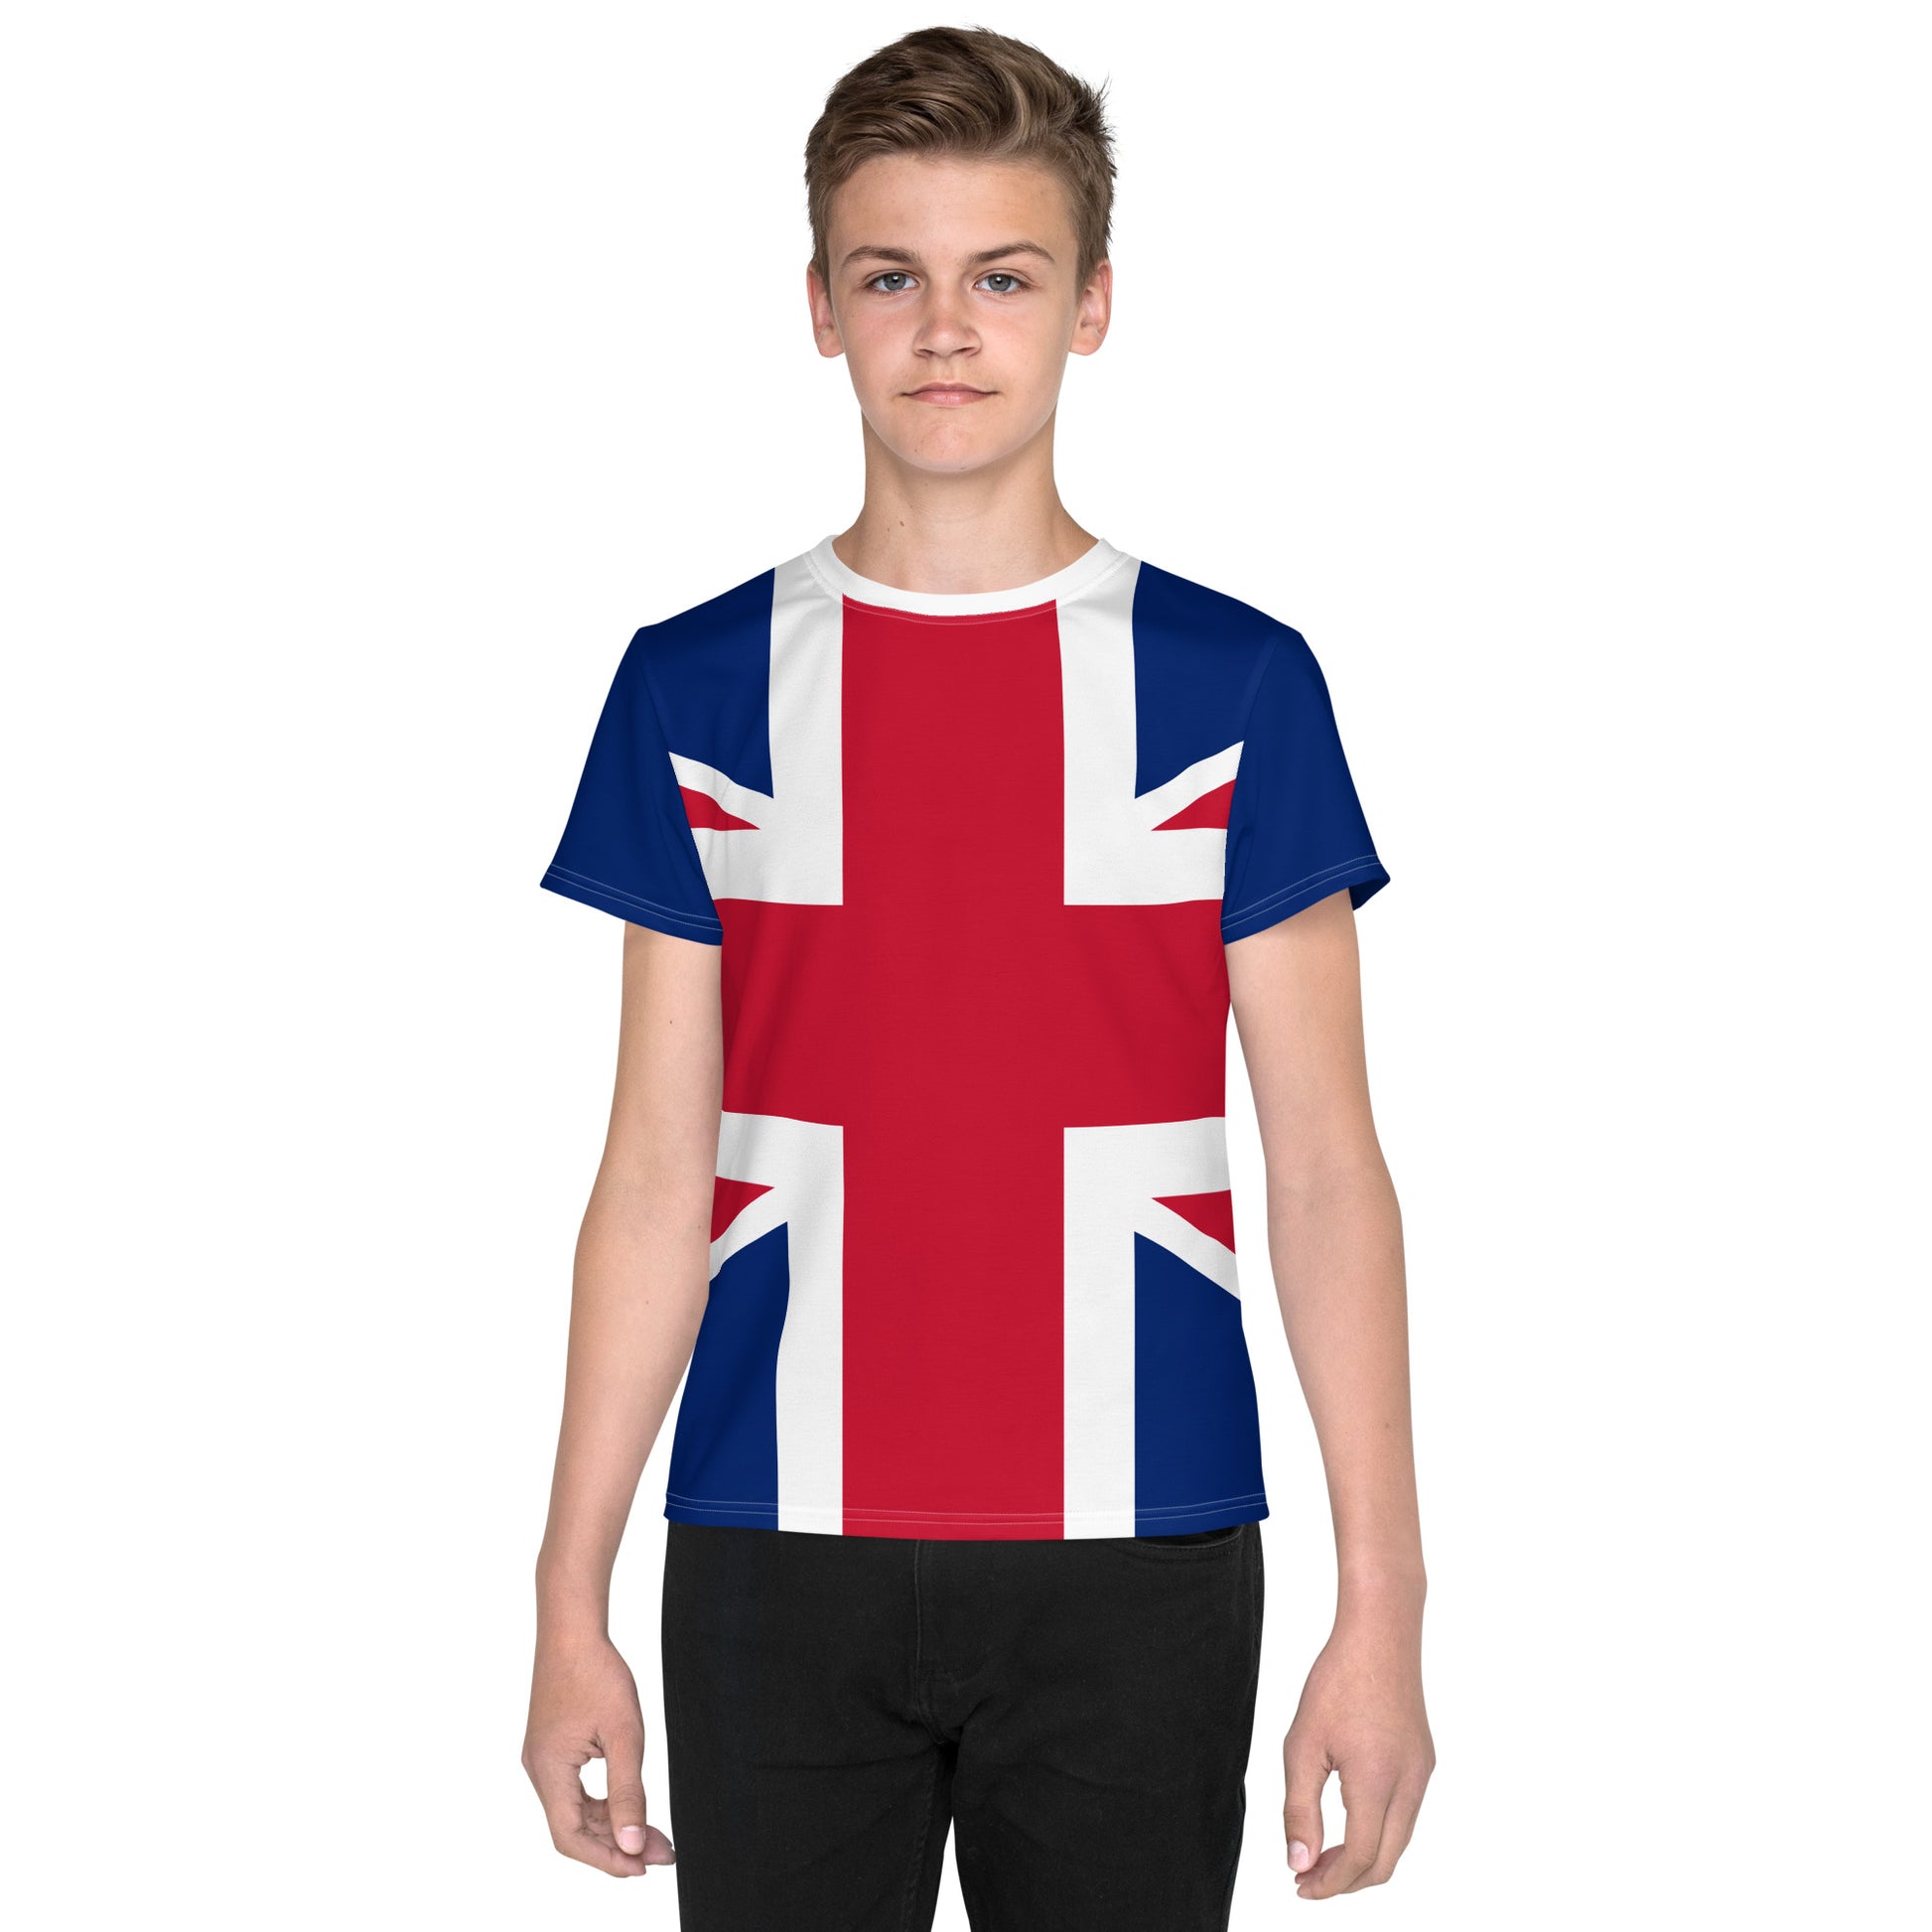 Union Jack Sizes Shirt